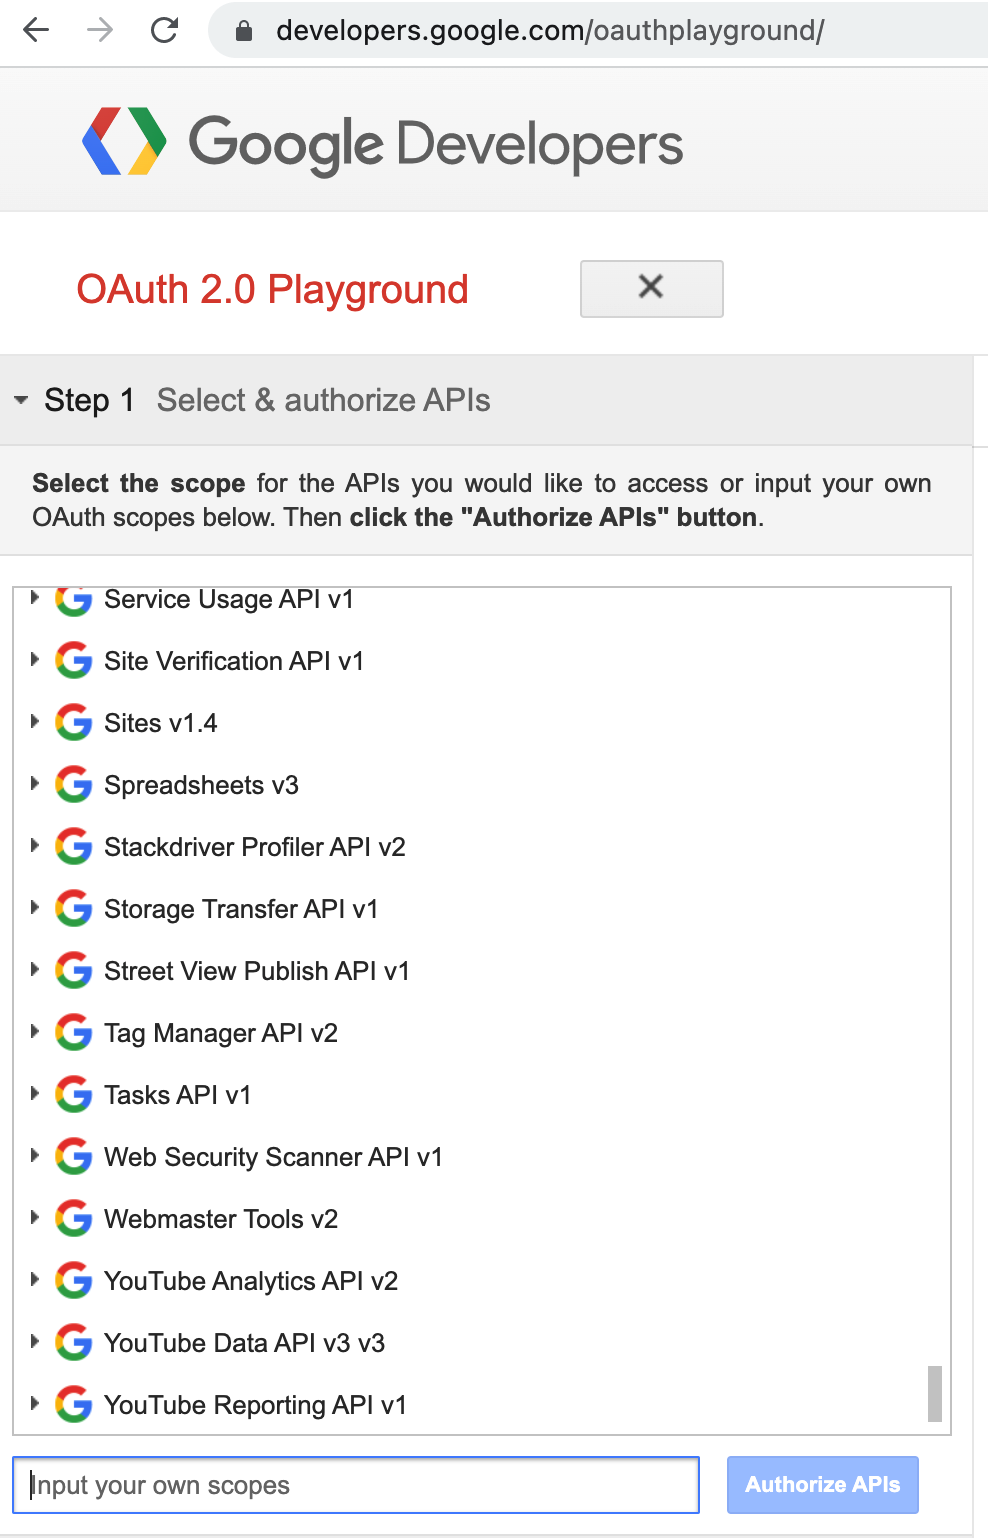 Imagen del paso 1 de la configuración del área de juegos de Google OAuth